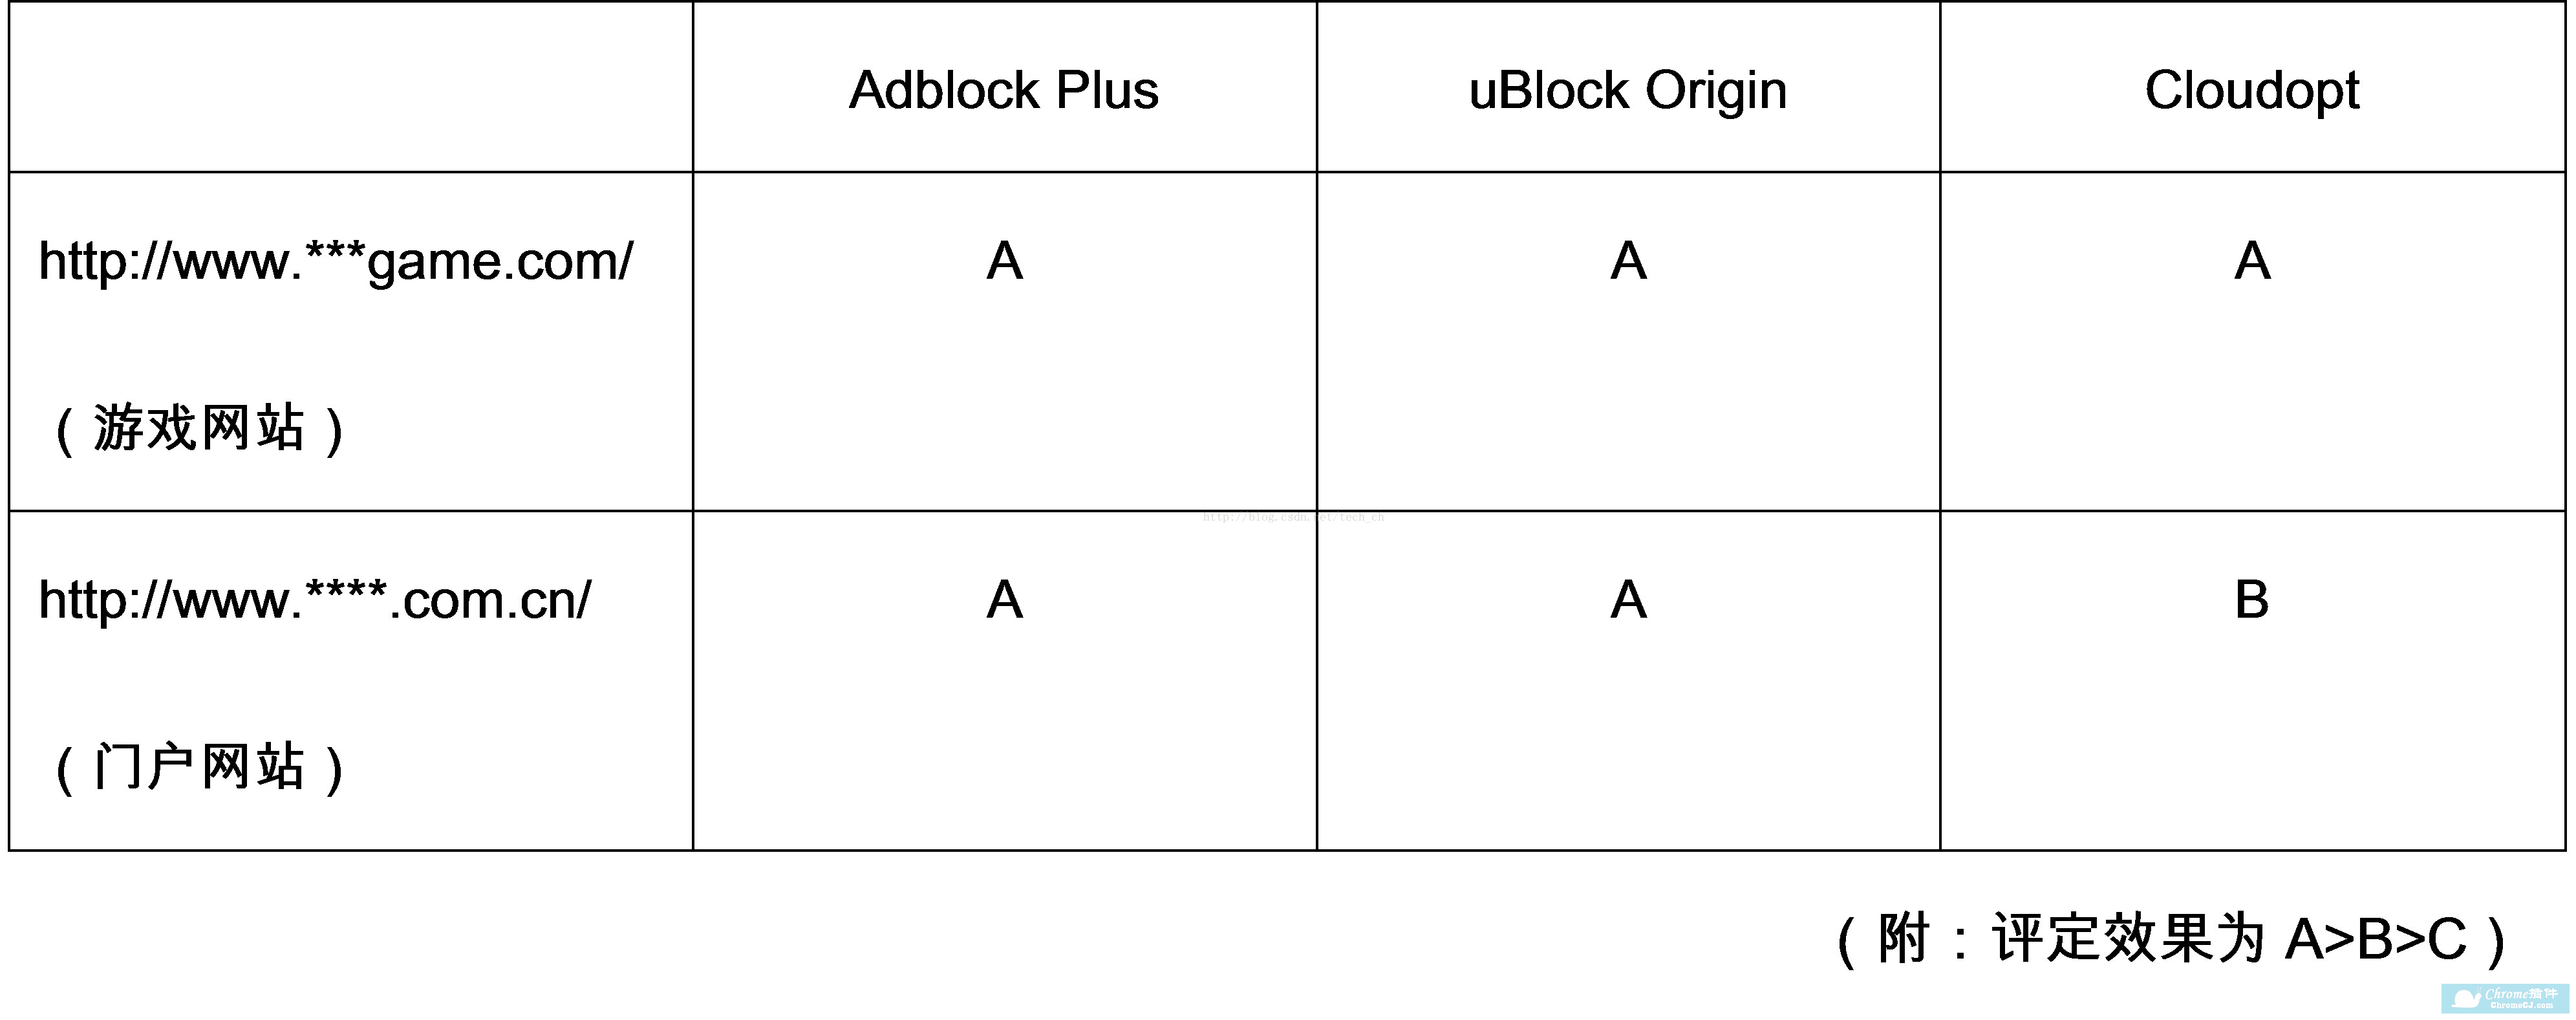 Adblock Plus、uBlock Origin、Cloudopt广告、钓鱼网站拦截效果对比